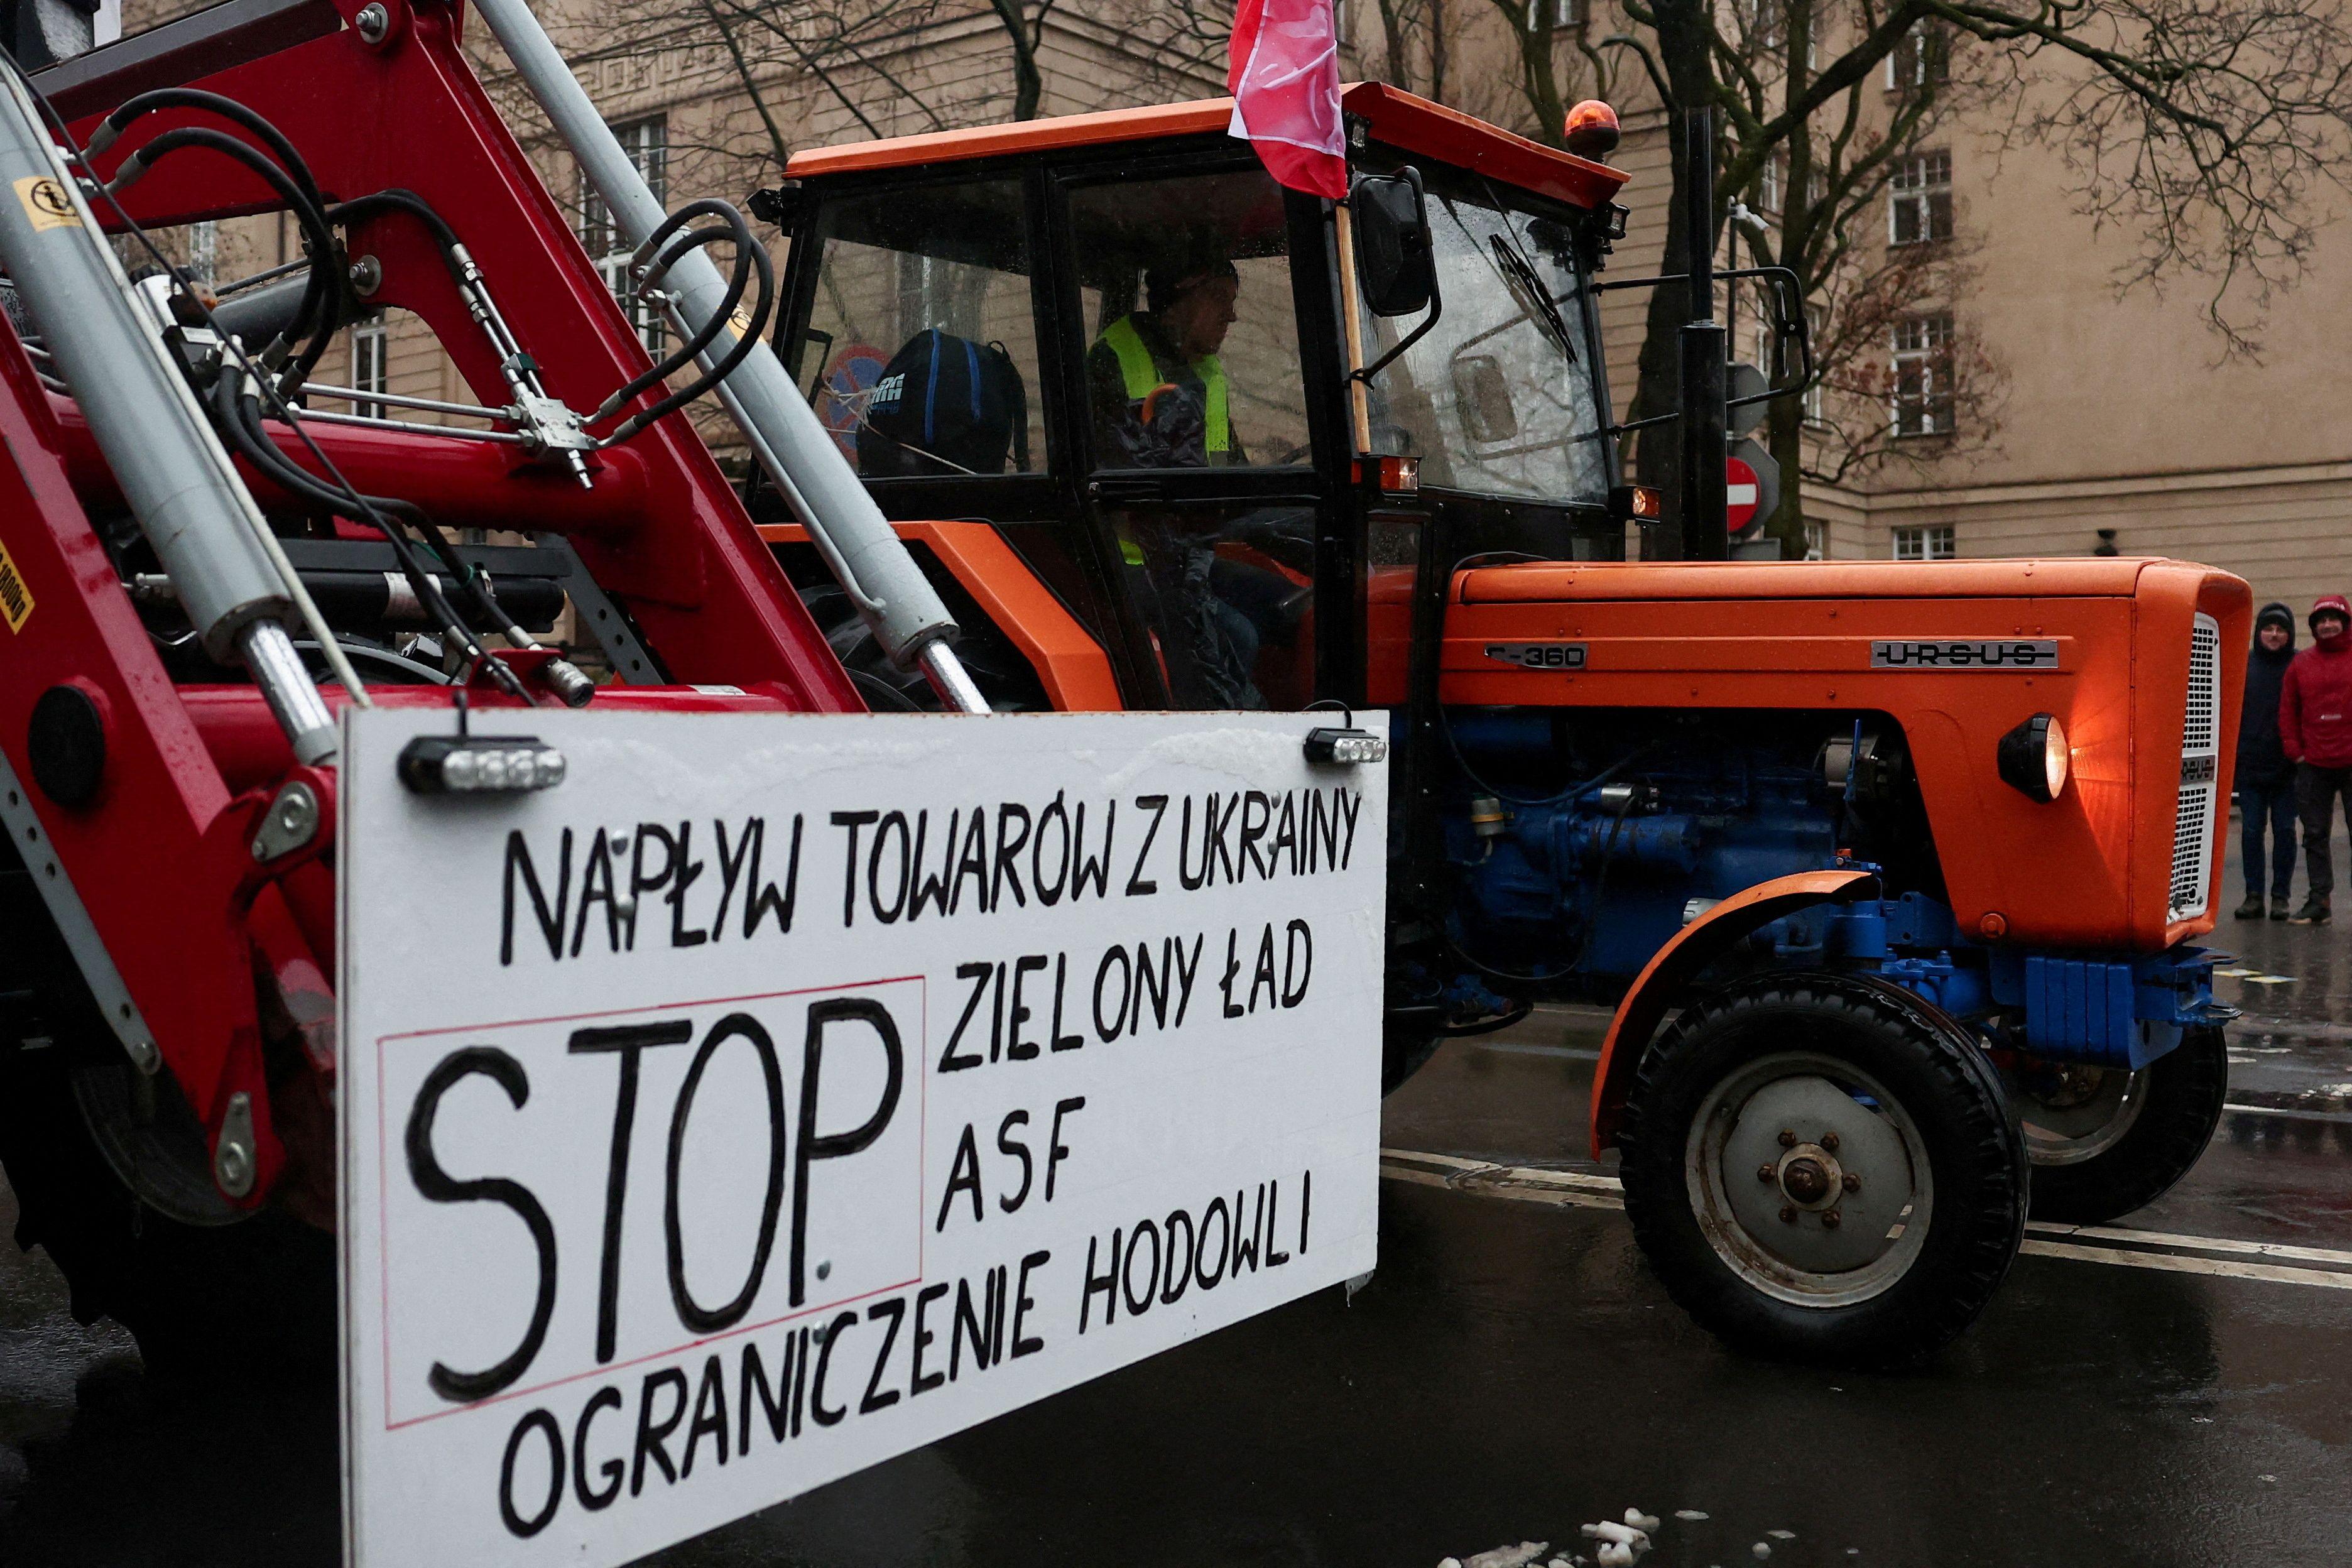 Um agricultor polonês utiliza um trator numa estrada durante um protesto contra pressões sobre os preços, impostos e regulamentação verde, queixas partilhadas por agricultores de toda a Europa, em Poznan, Polônia